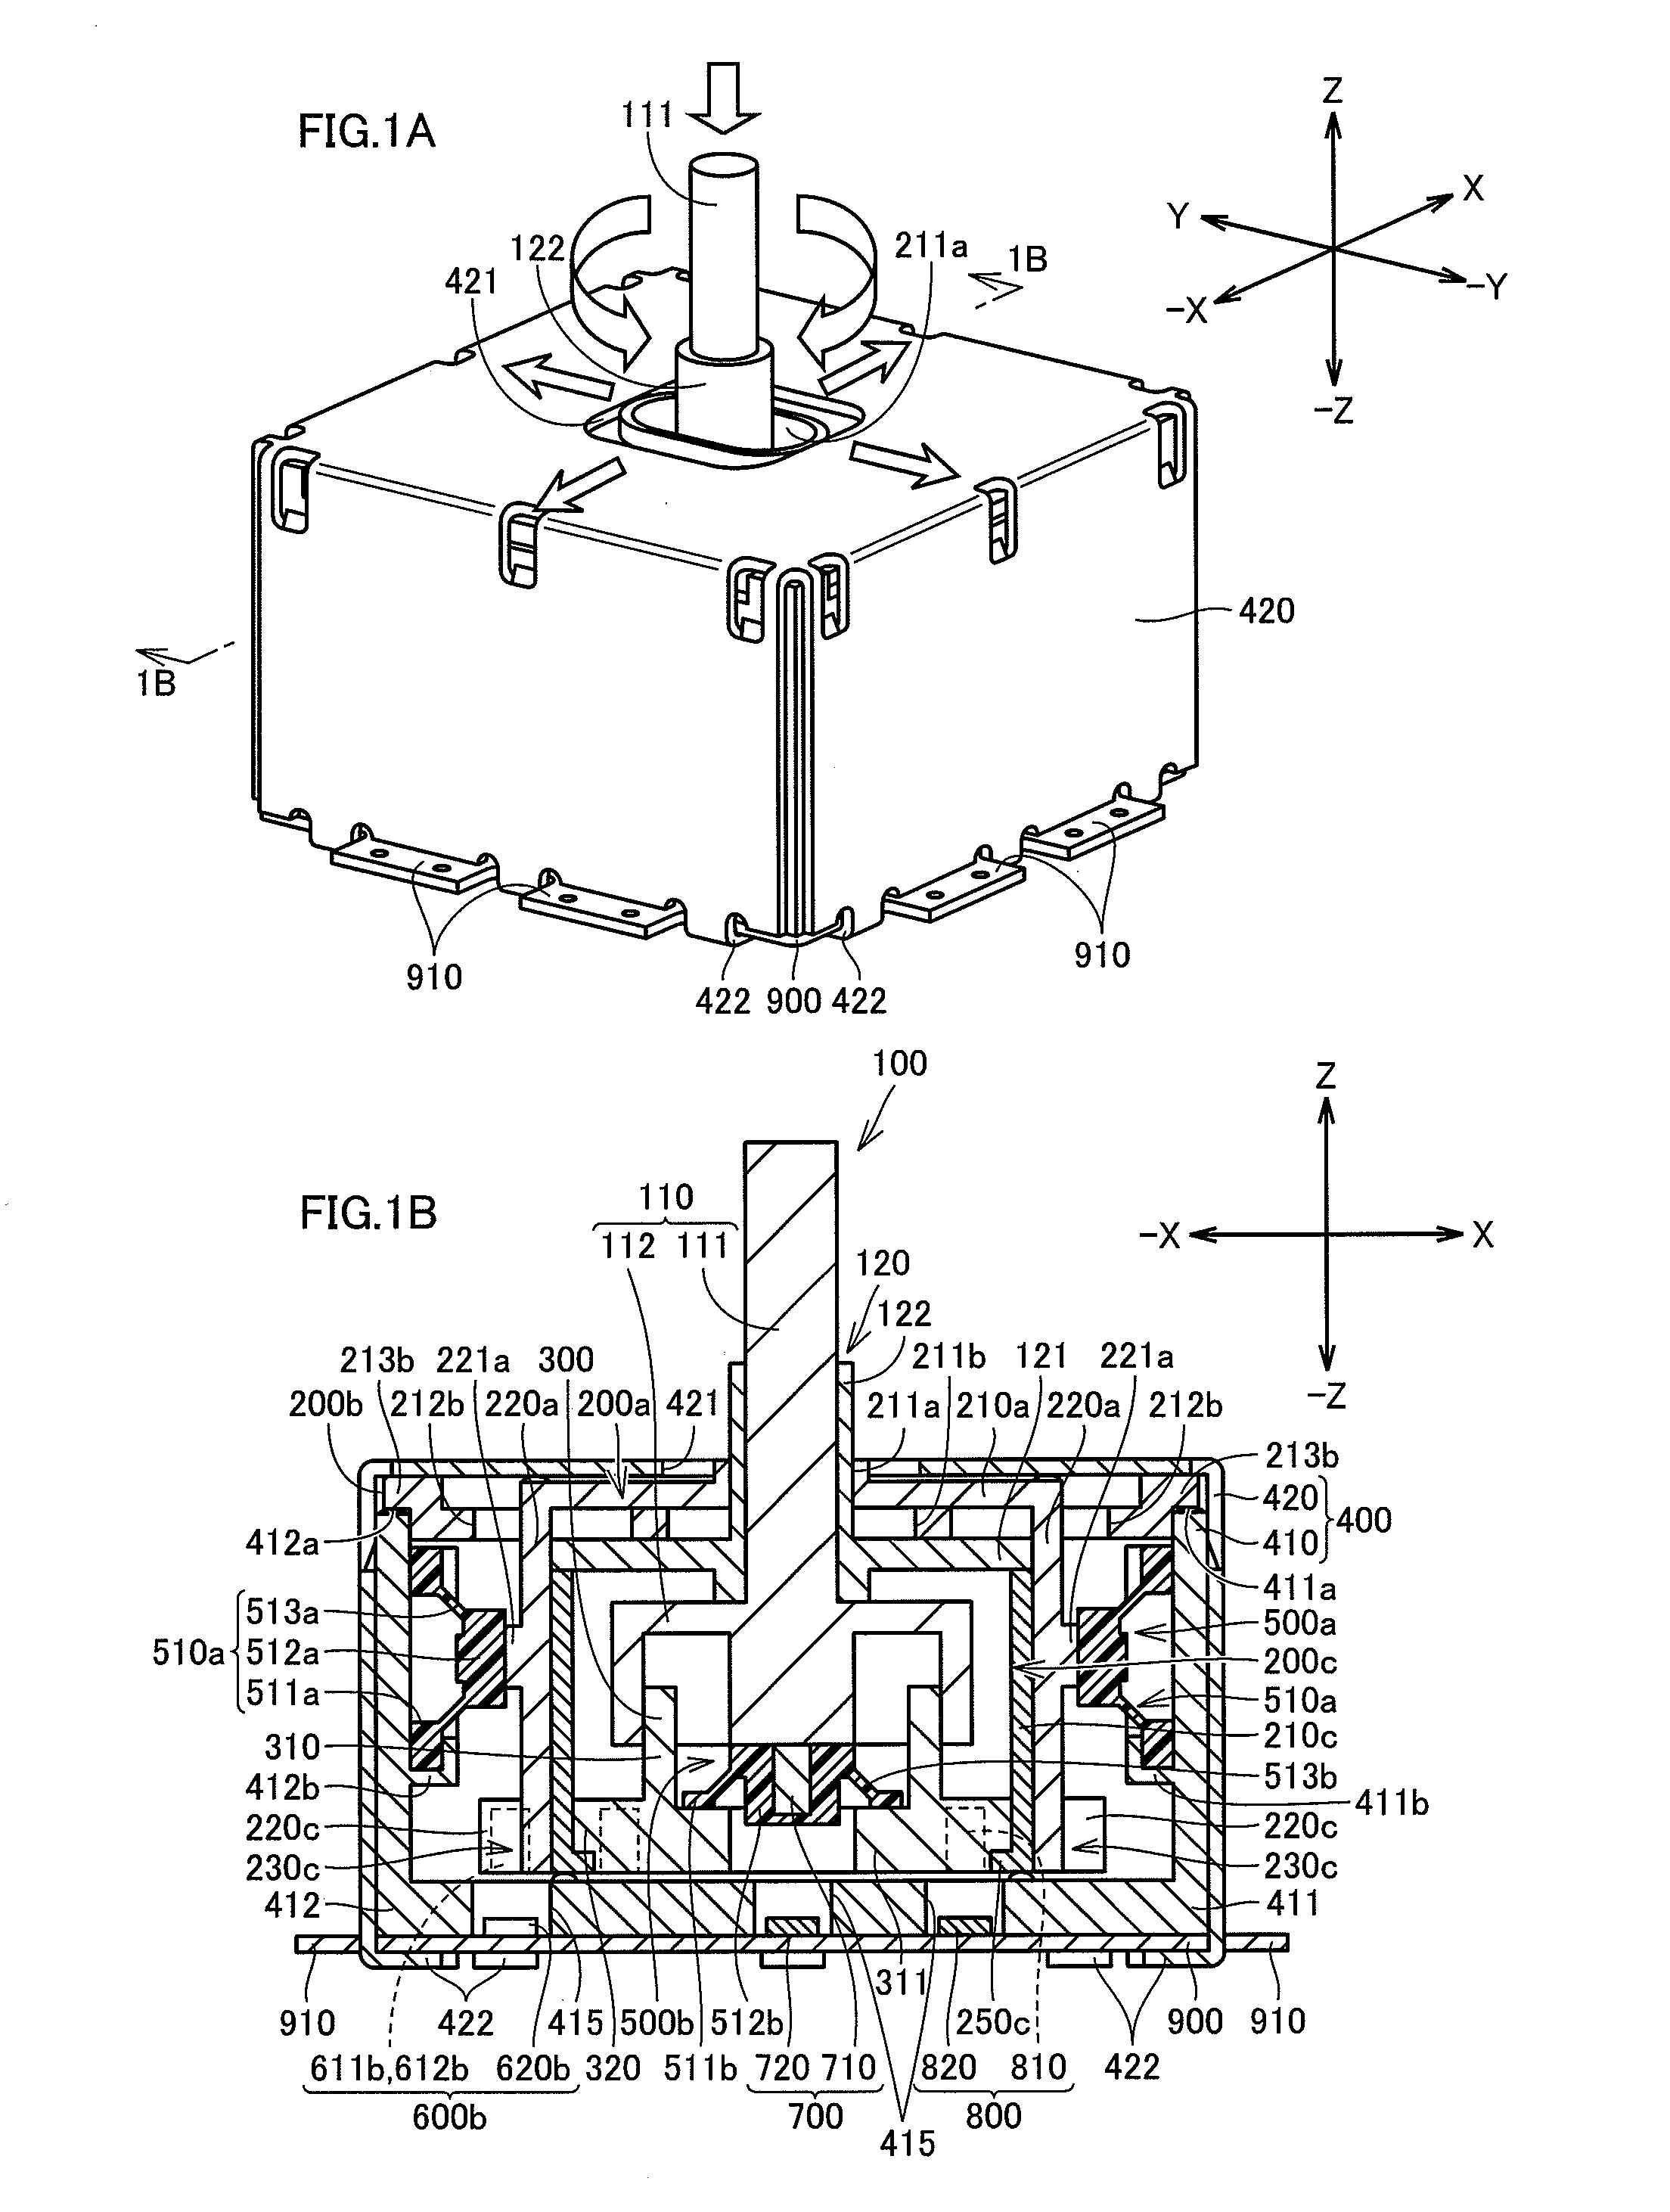 Input apparatus